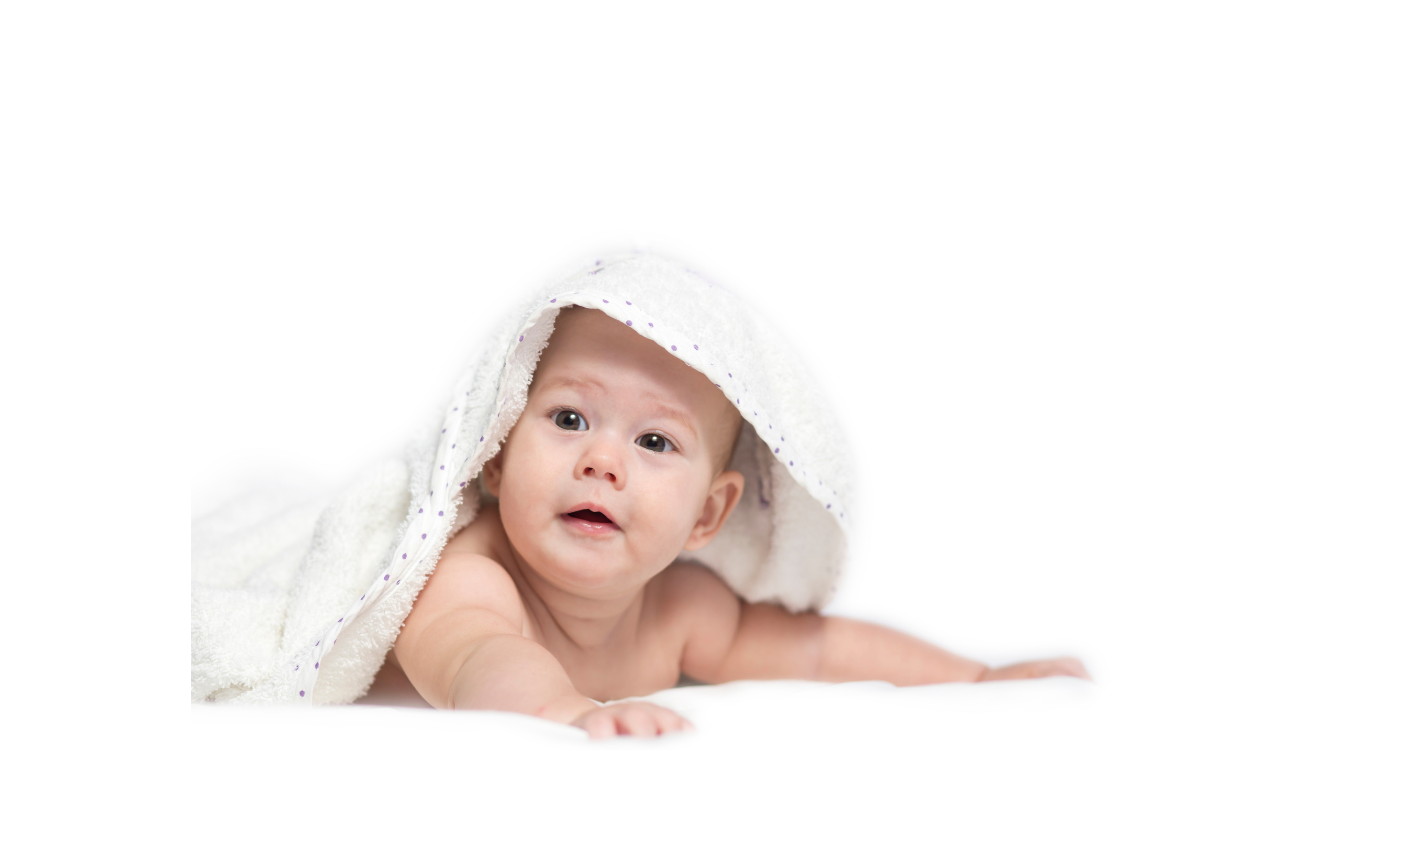 Tutorial de Costura: Cómo Confeccionar una Capa de Toalla con Capucha para Bebés